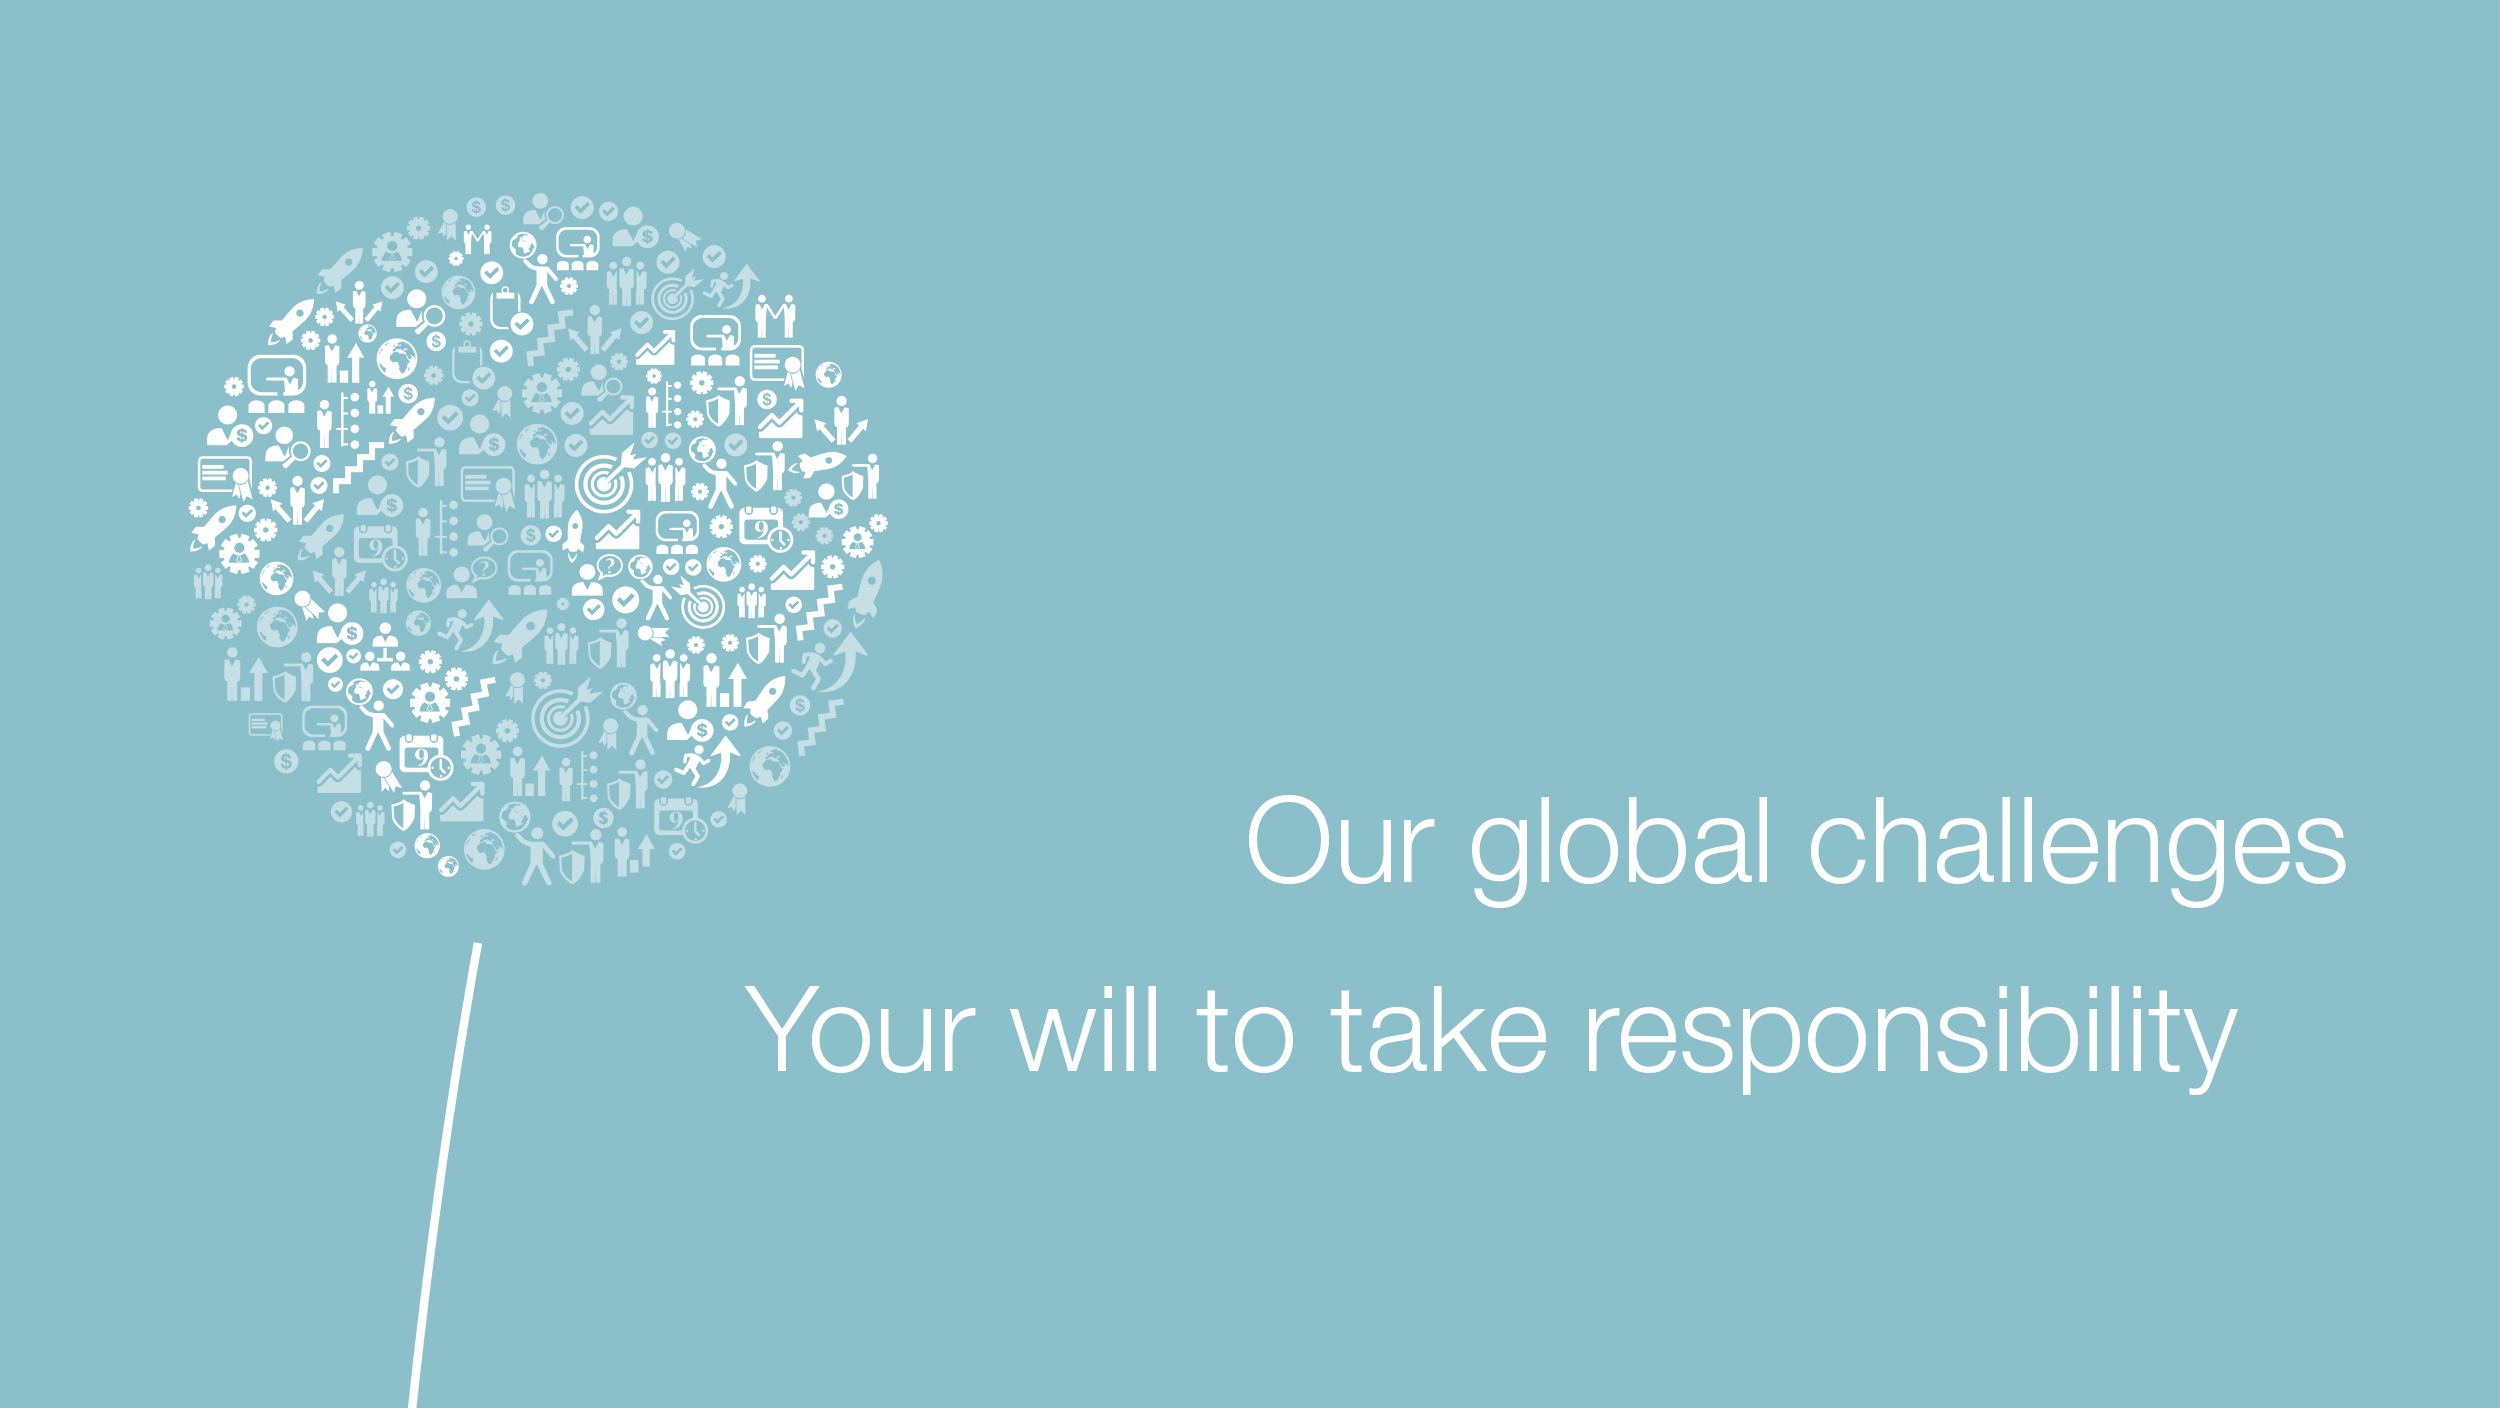 Diente de león hecho de iconos como un globo, junto al eslogan: Nuestros retos globales, tu voluntad de asumir responsabilidad.